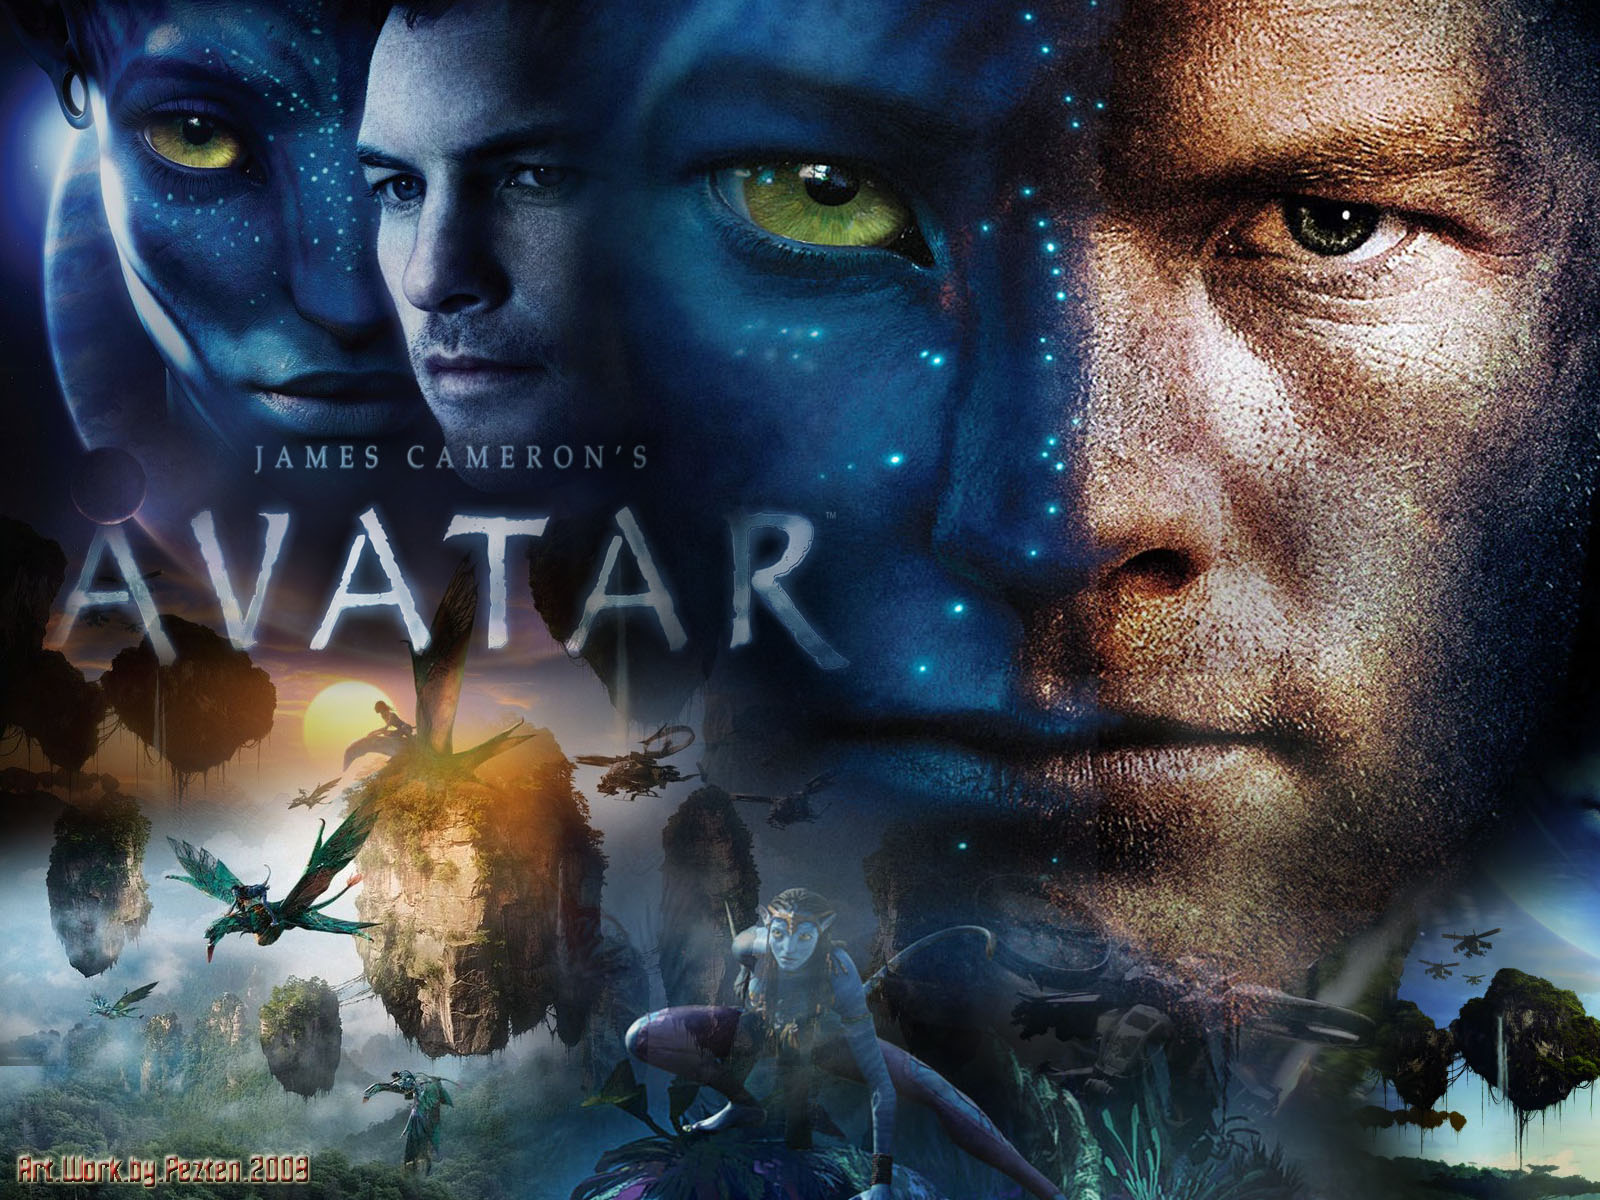 รีวิวหนัง Avatar Disney+Hotstar สุดยอดภาพยนตร์ที่สามารถทำลายสถิติไททานิค